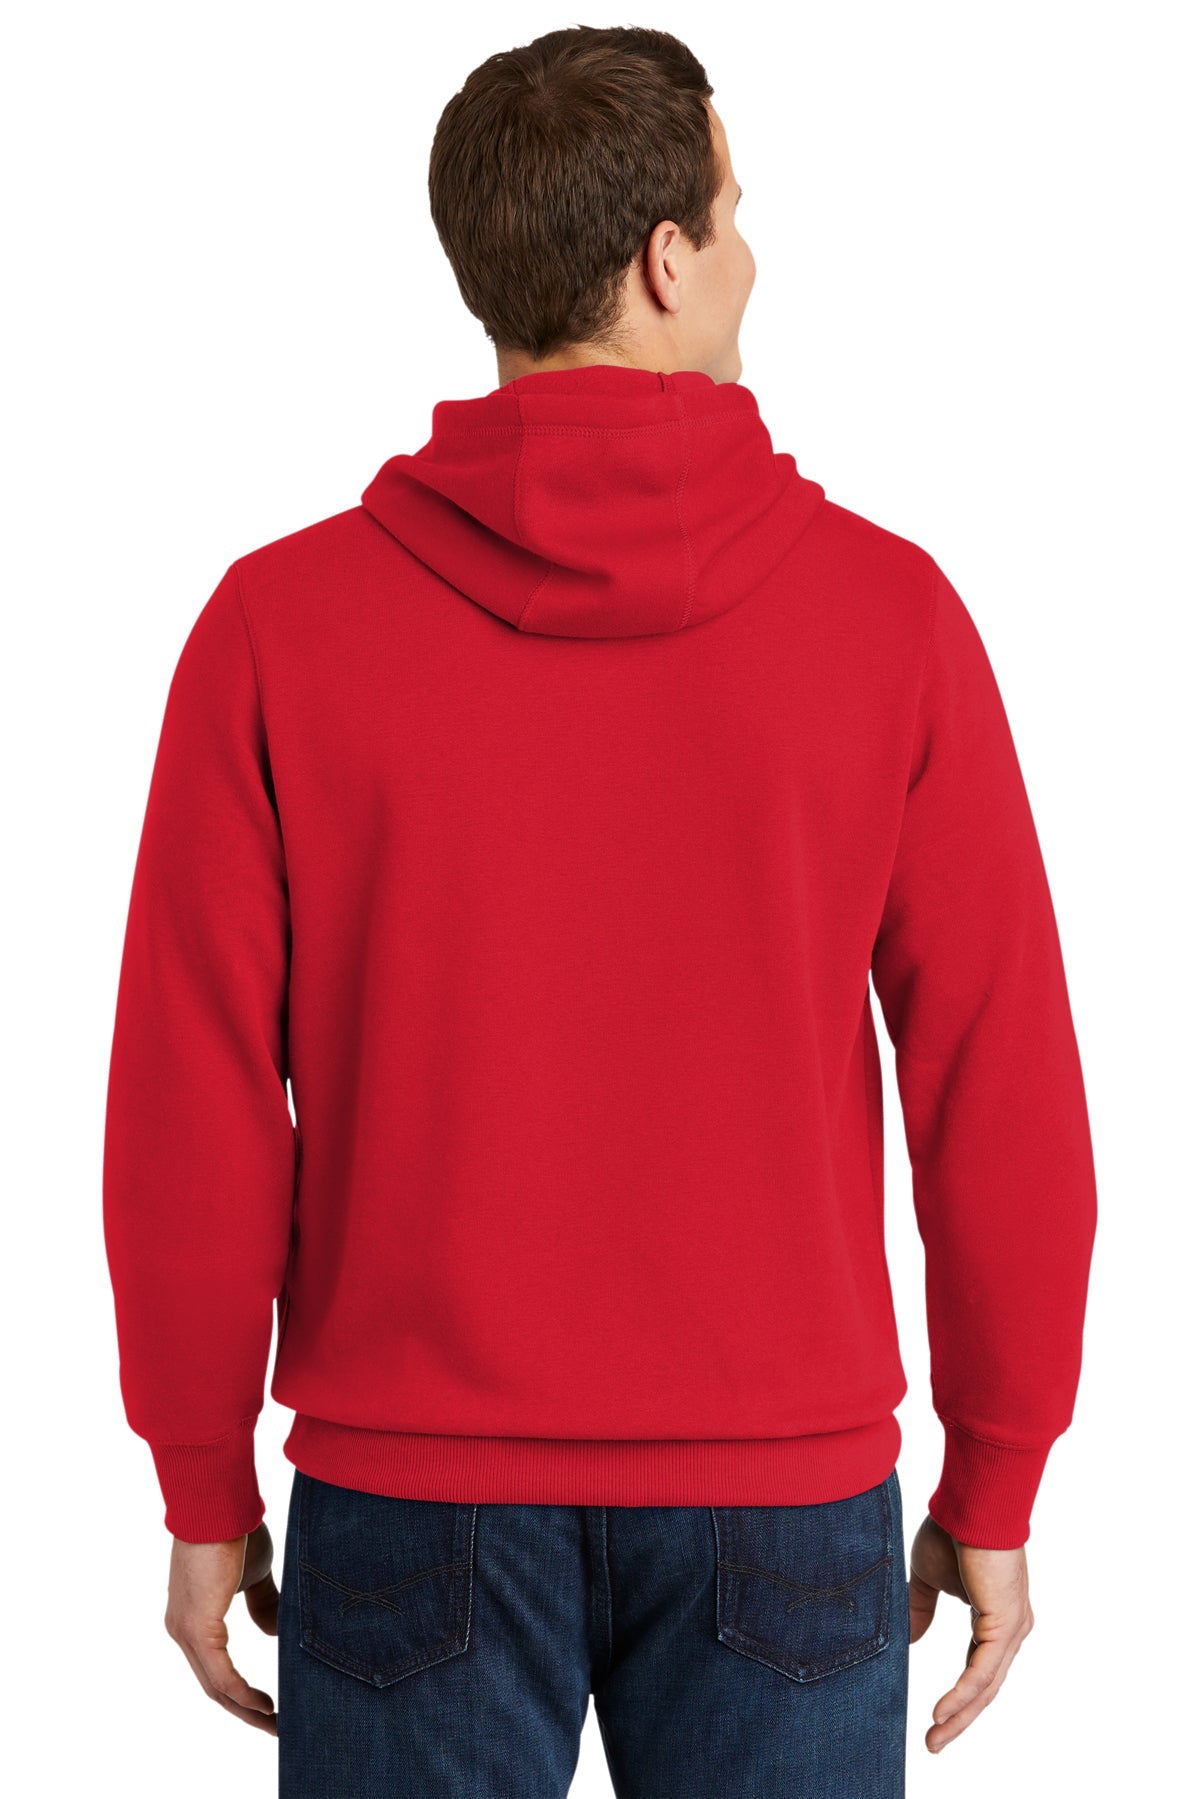 sport-tek_tst254 _true red_company_logo_sweatshirts